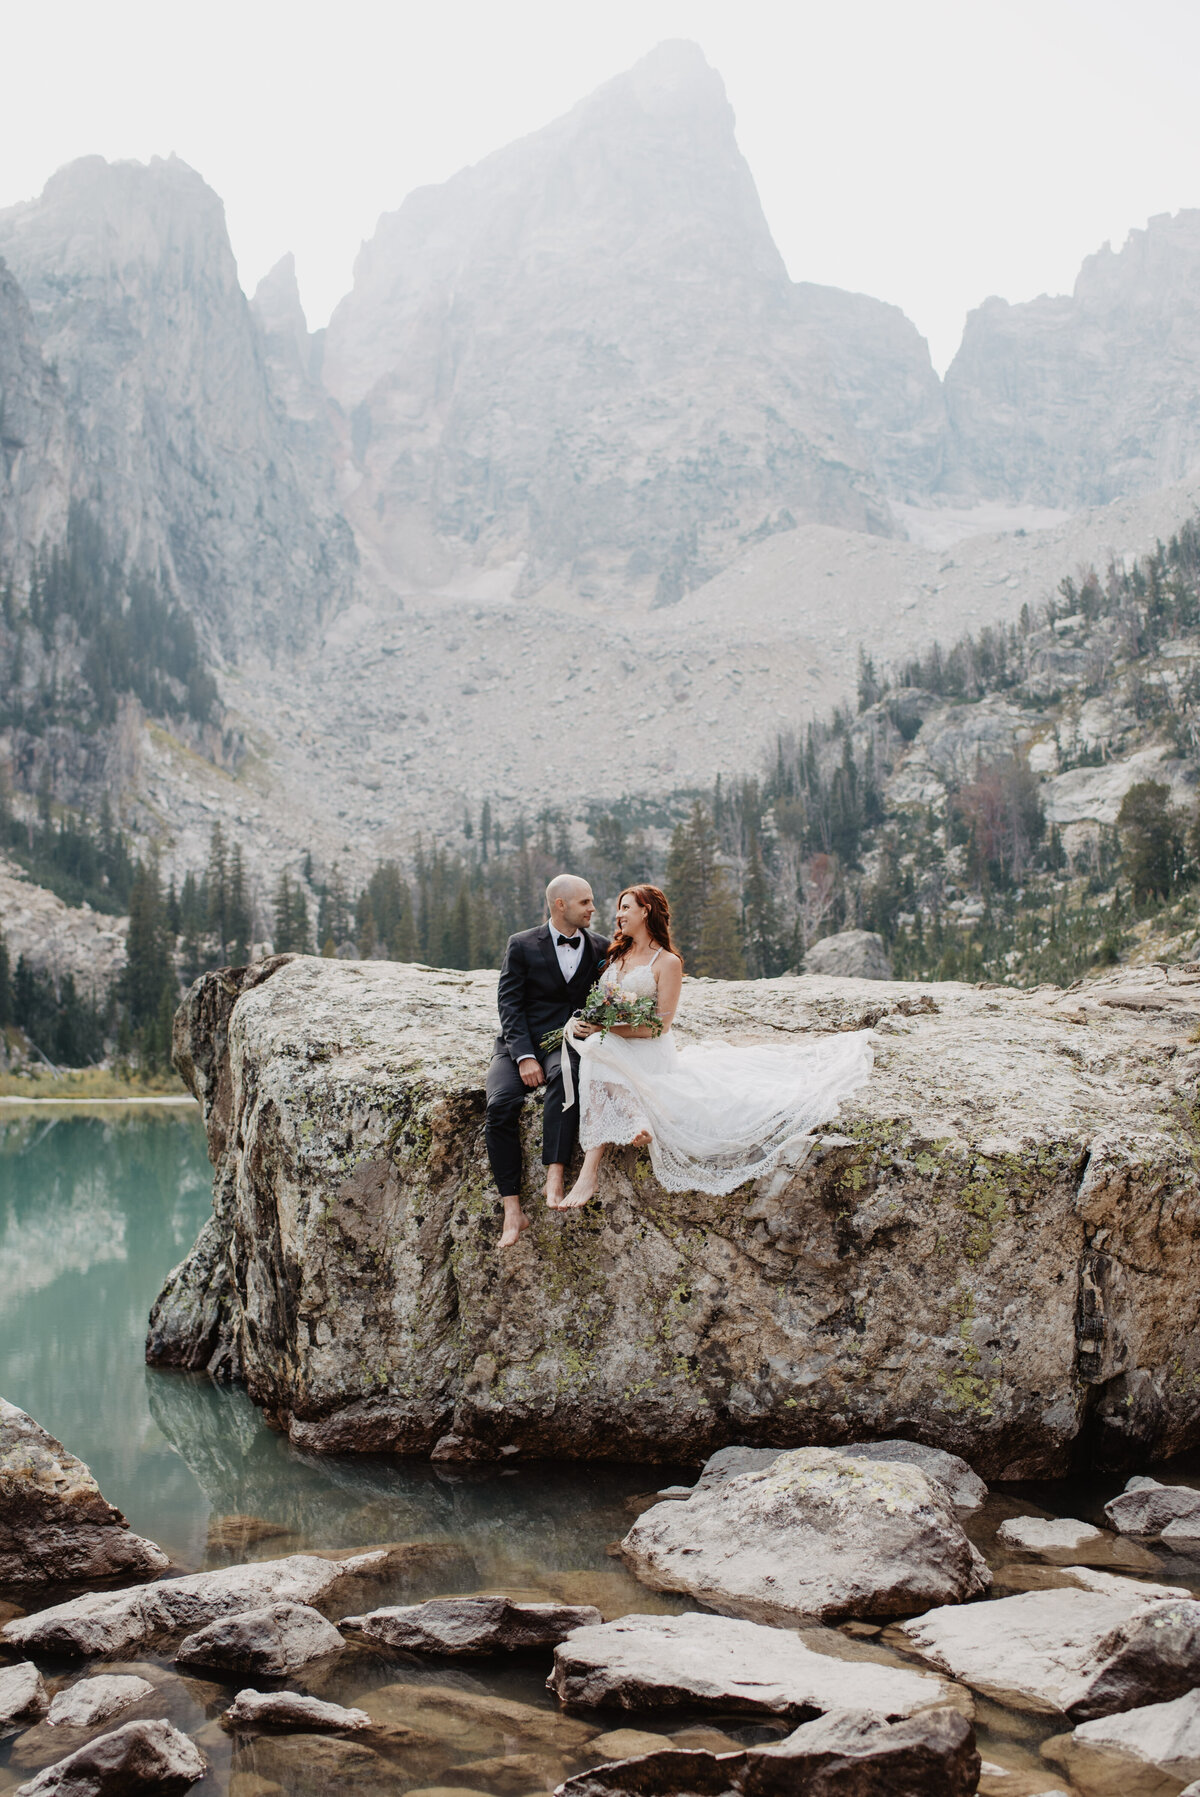 Jackson Hole photographers capture couple sitting on rock at Jenny Lake